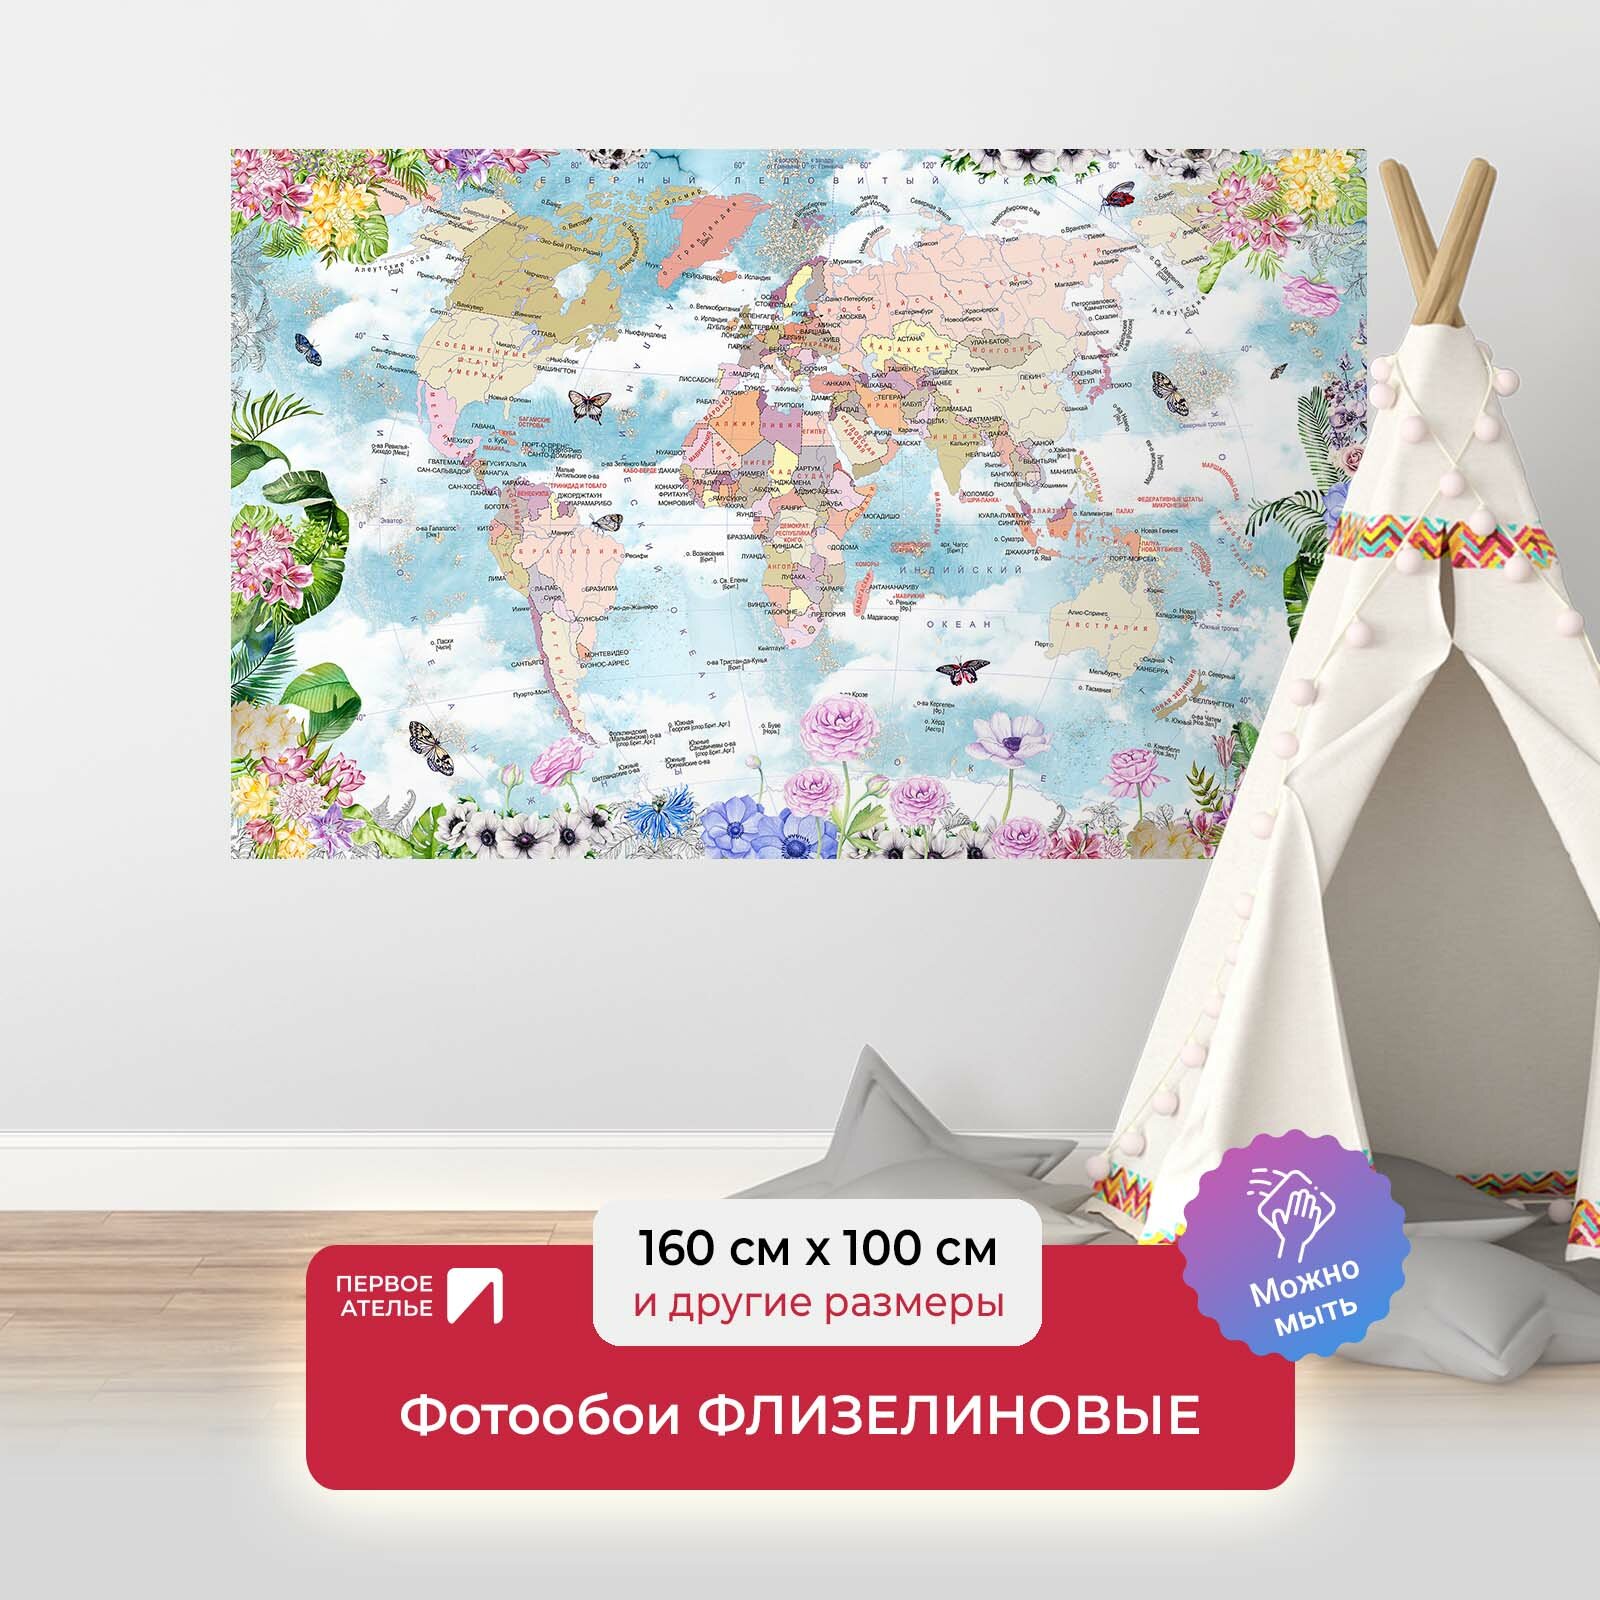 Фотообои на стену первое ателье "Карта мира в цветочной рамке" 160х100 см (ШхВ), флизелиновые Premium